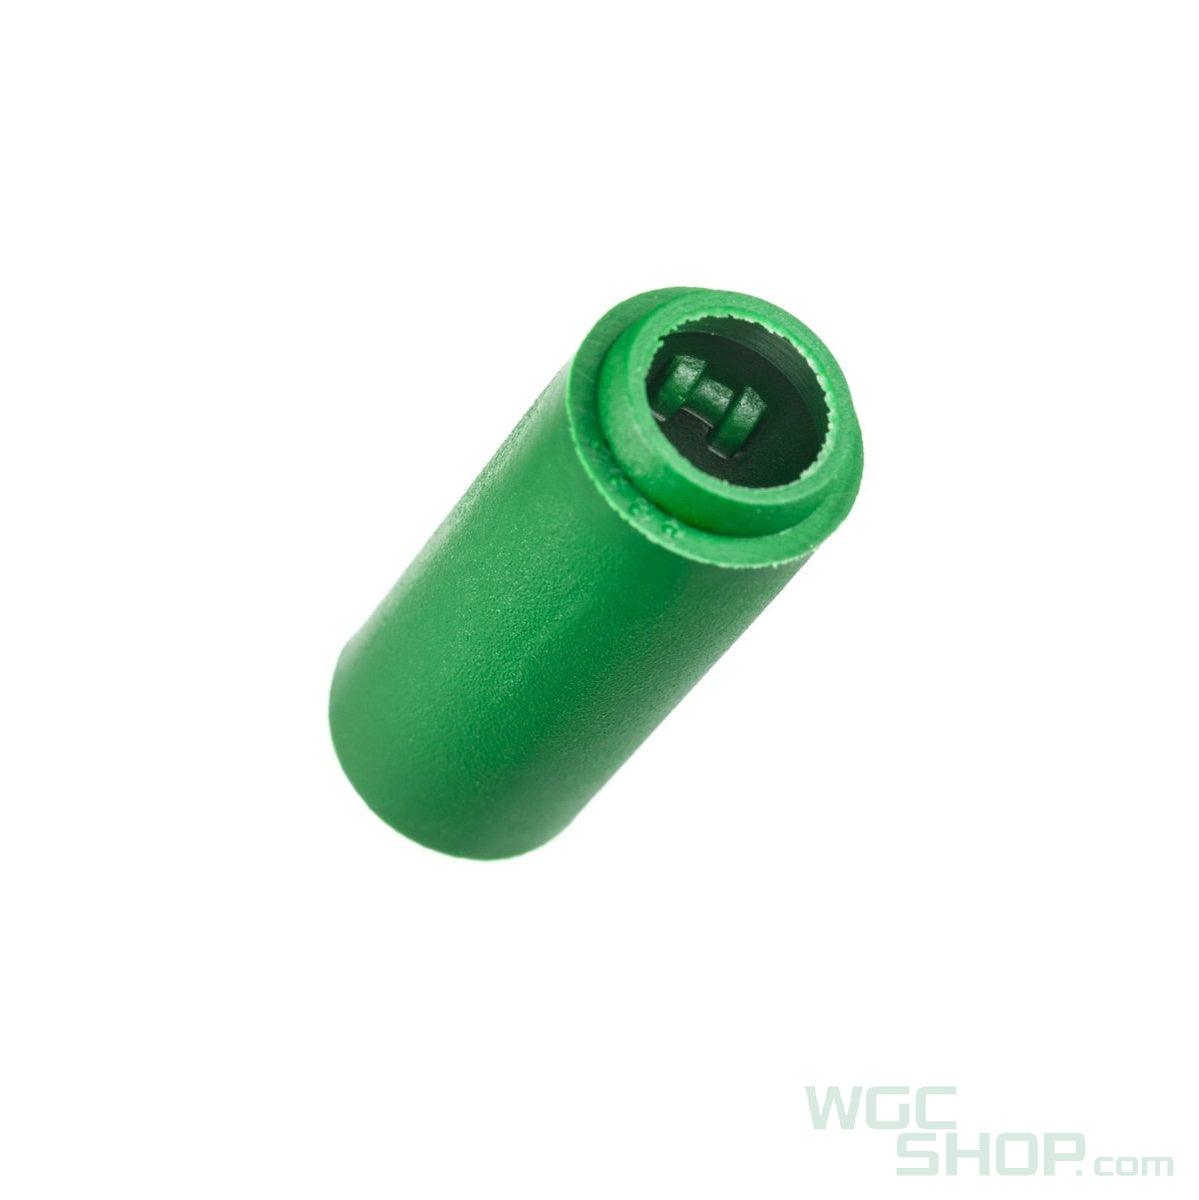 FALCON 6.03mm Precision Inner Barrel for Marui Spec AEG ( 229mm ) - WGC Shop